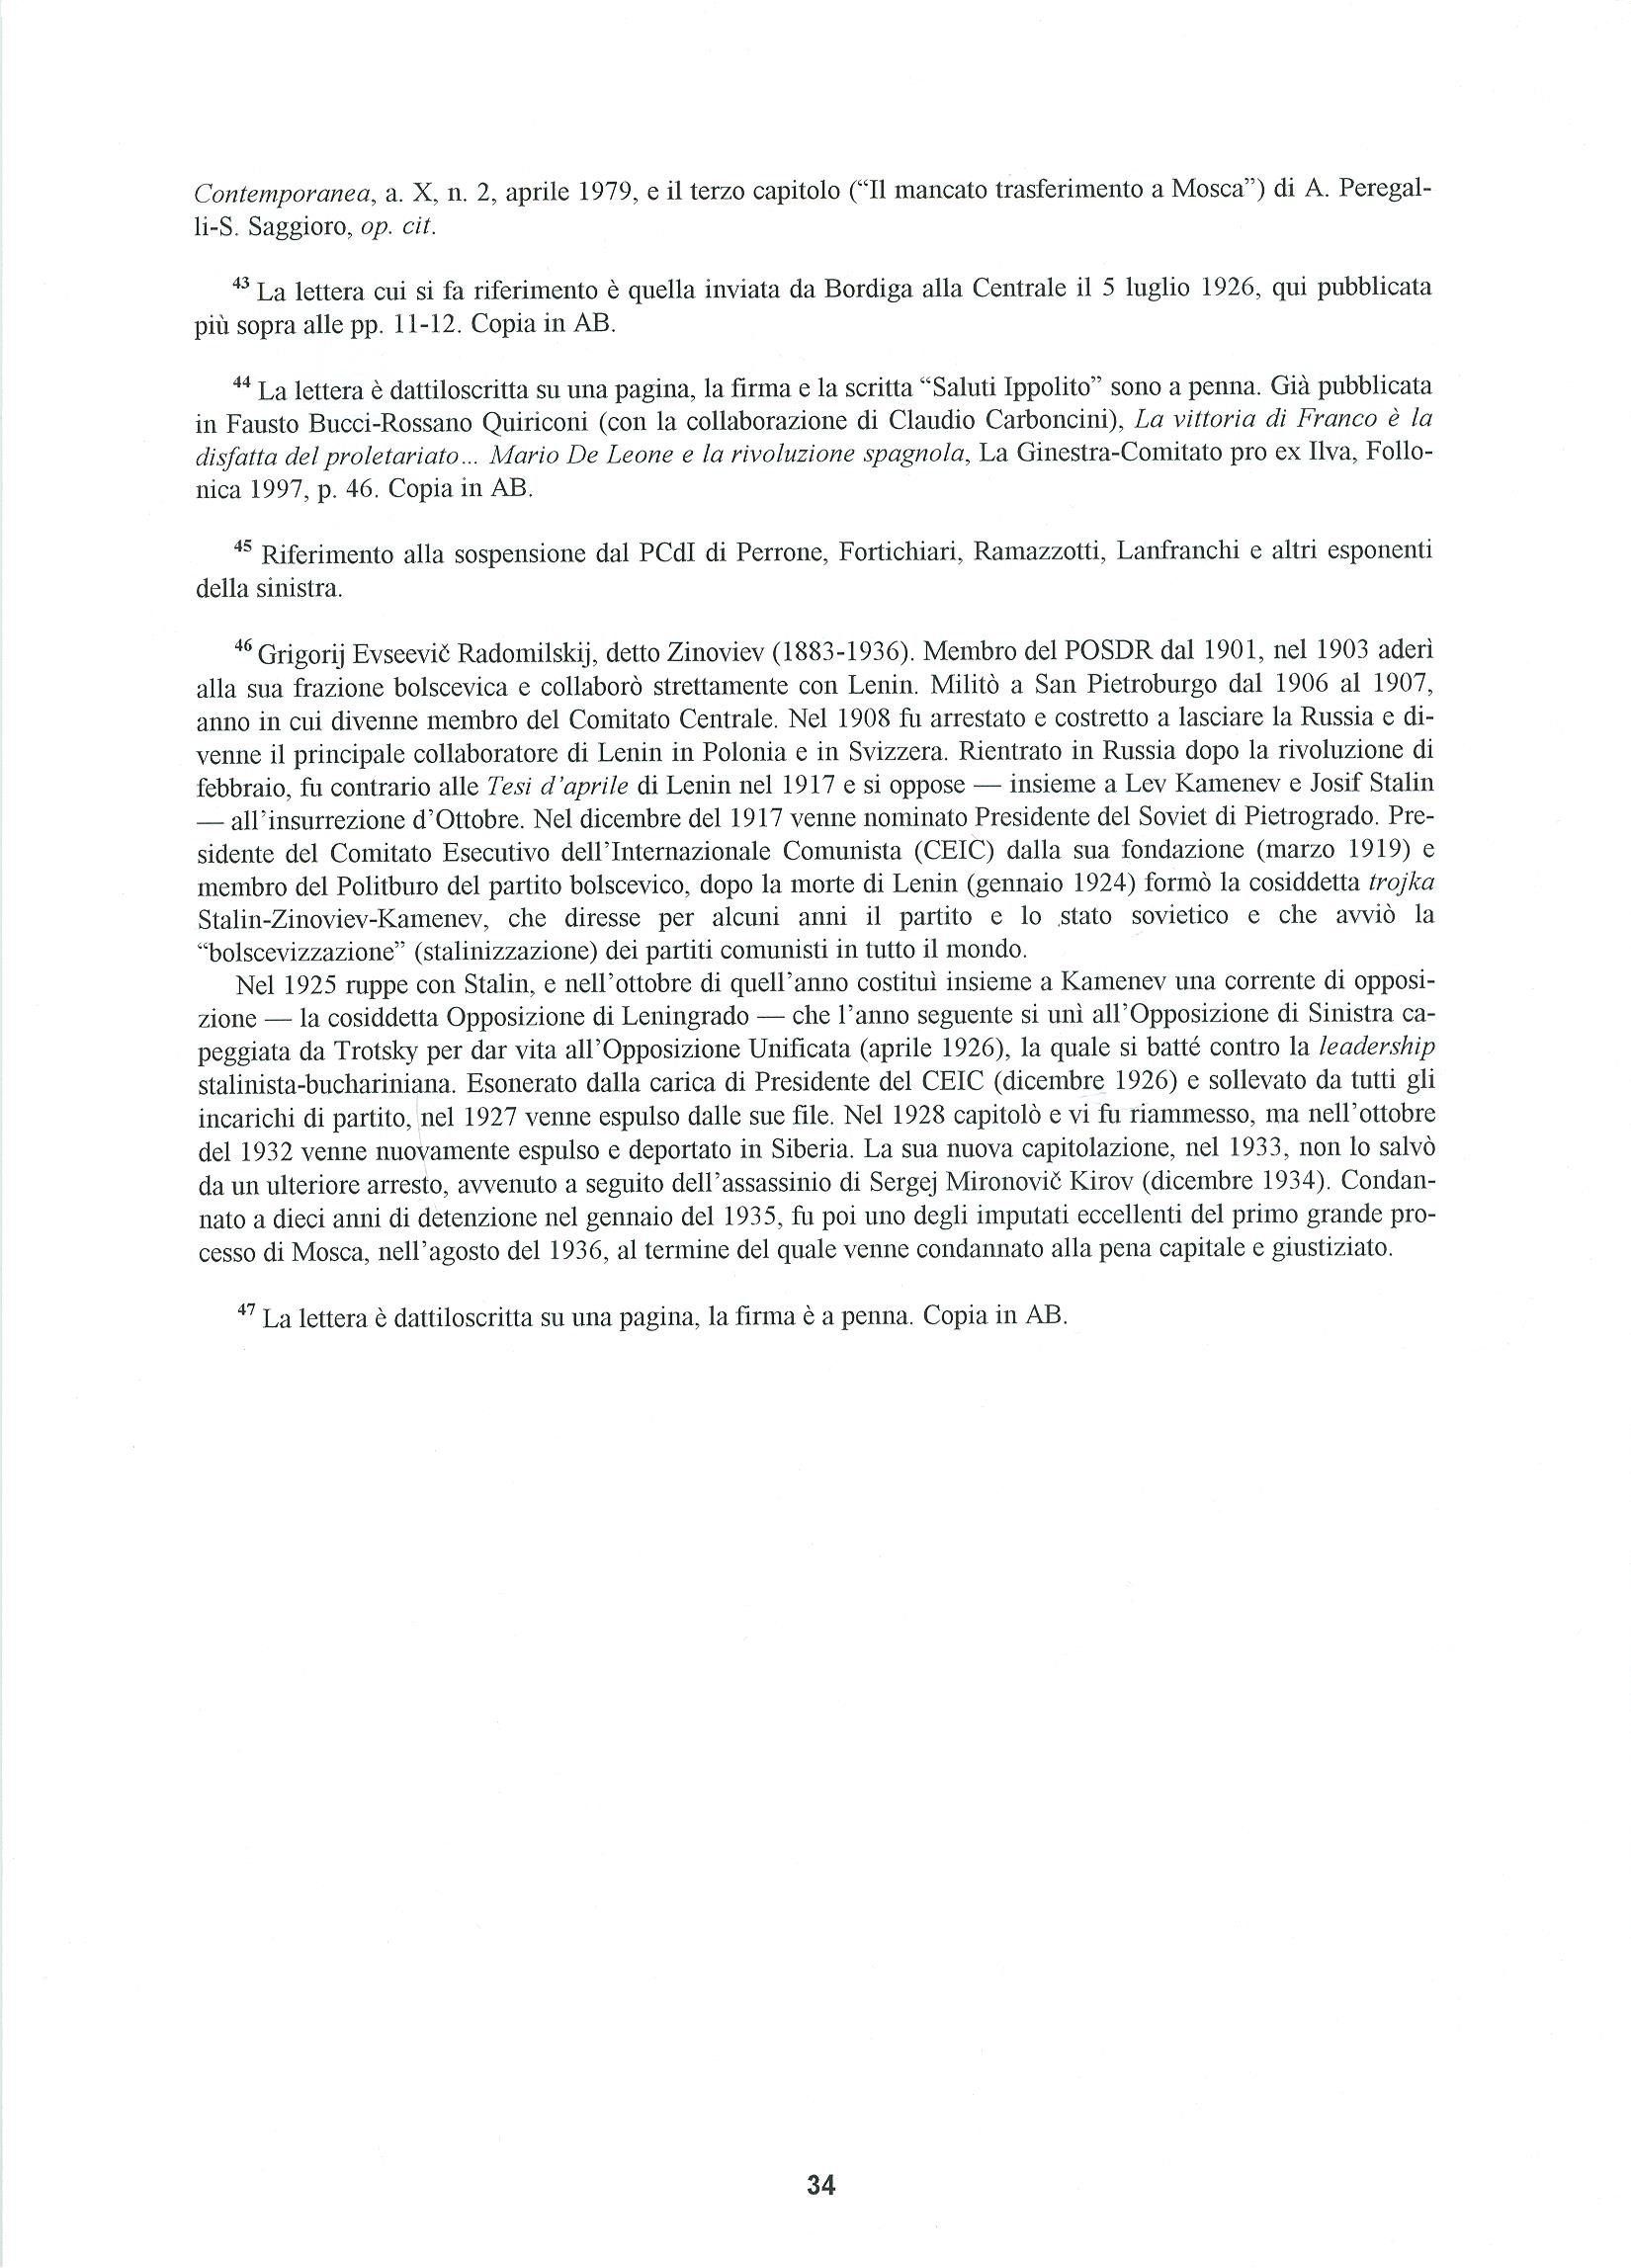 Quaderni del Centro Studi Pietro Tresso (1996-2009) n. 14 (novembre 1998) - pag. 35